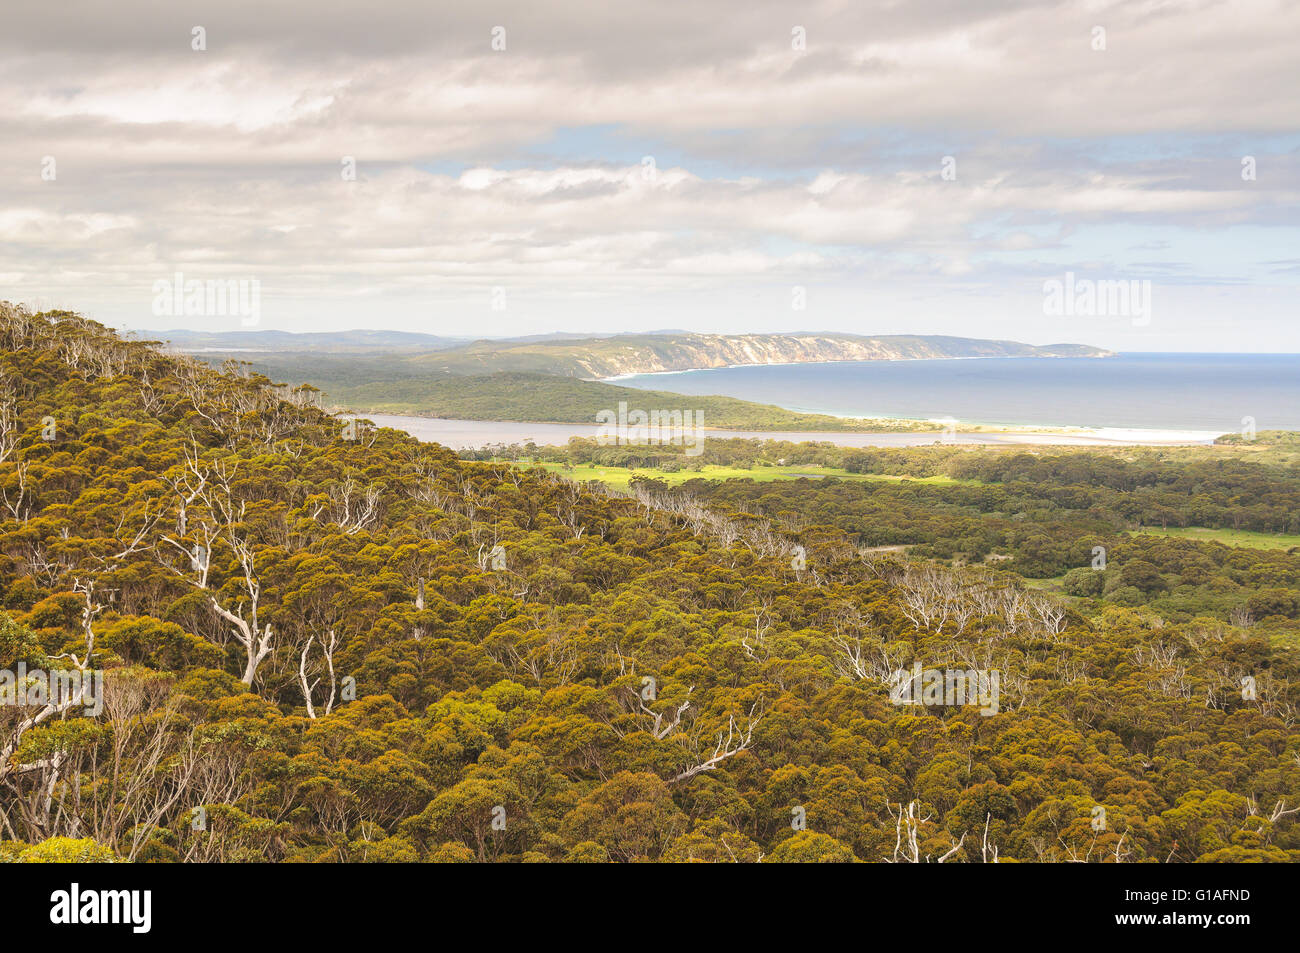 Vista della costa in Danimarca, Australia occidentale Foto Stock